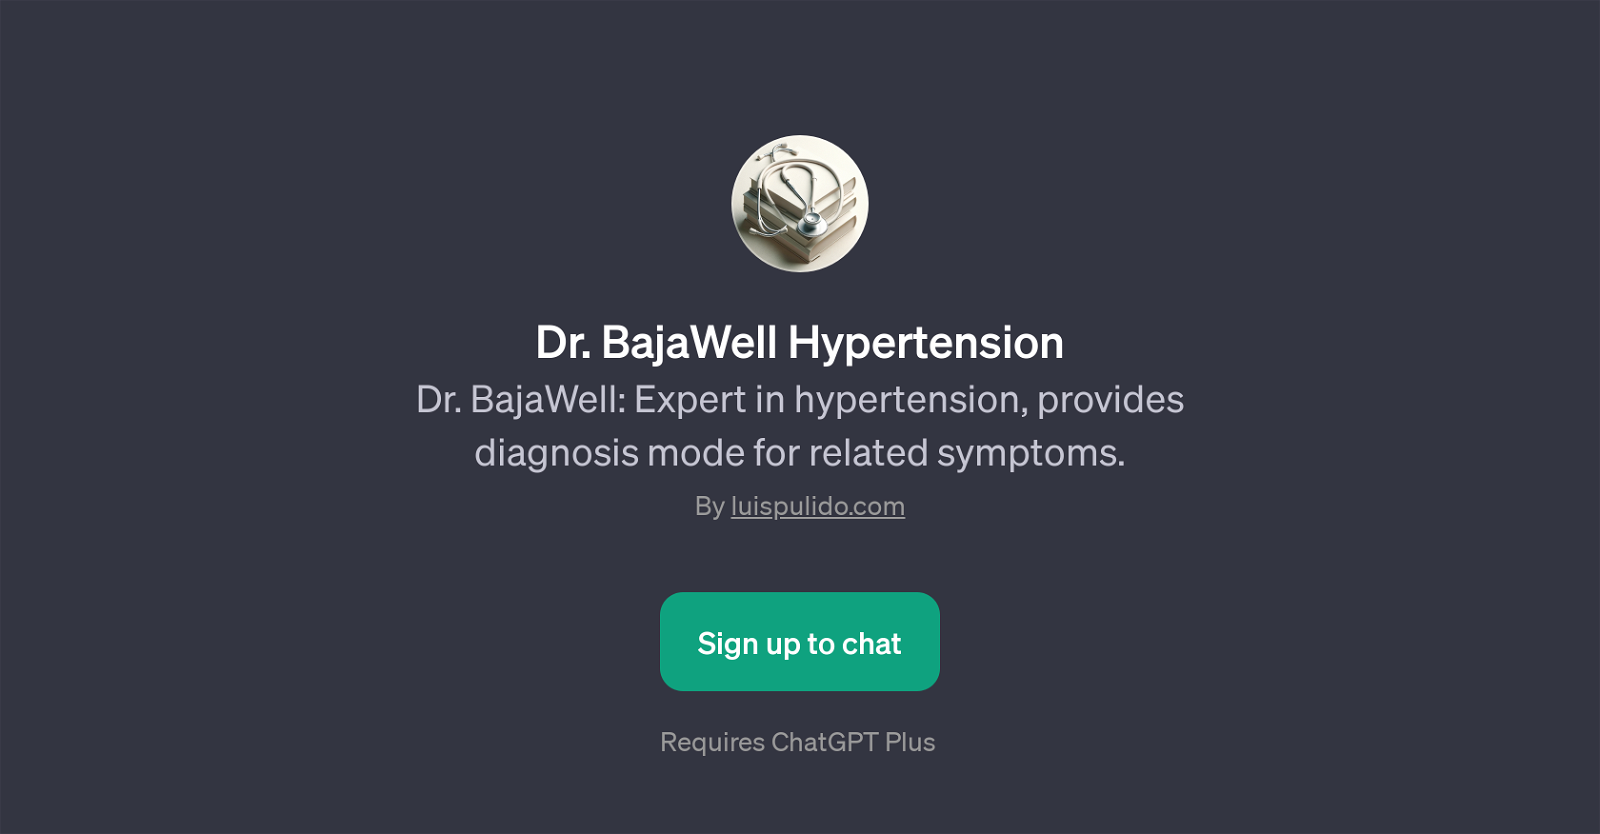 Dr. BajaWell Hypertension website